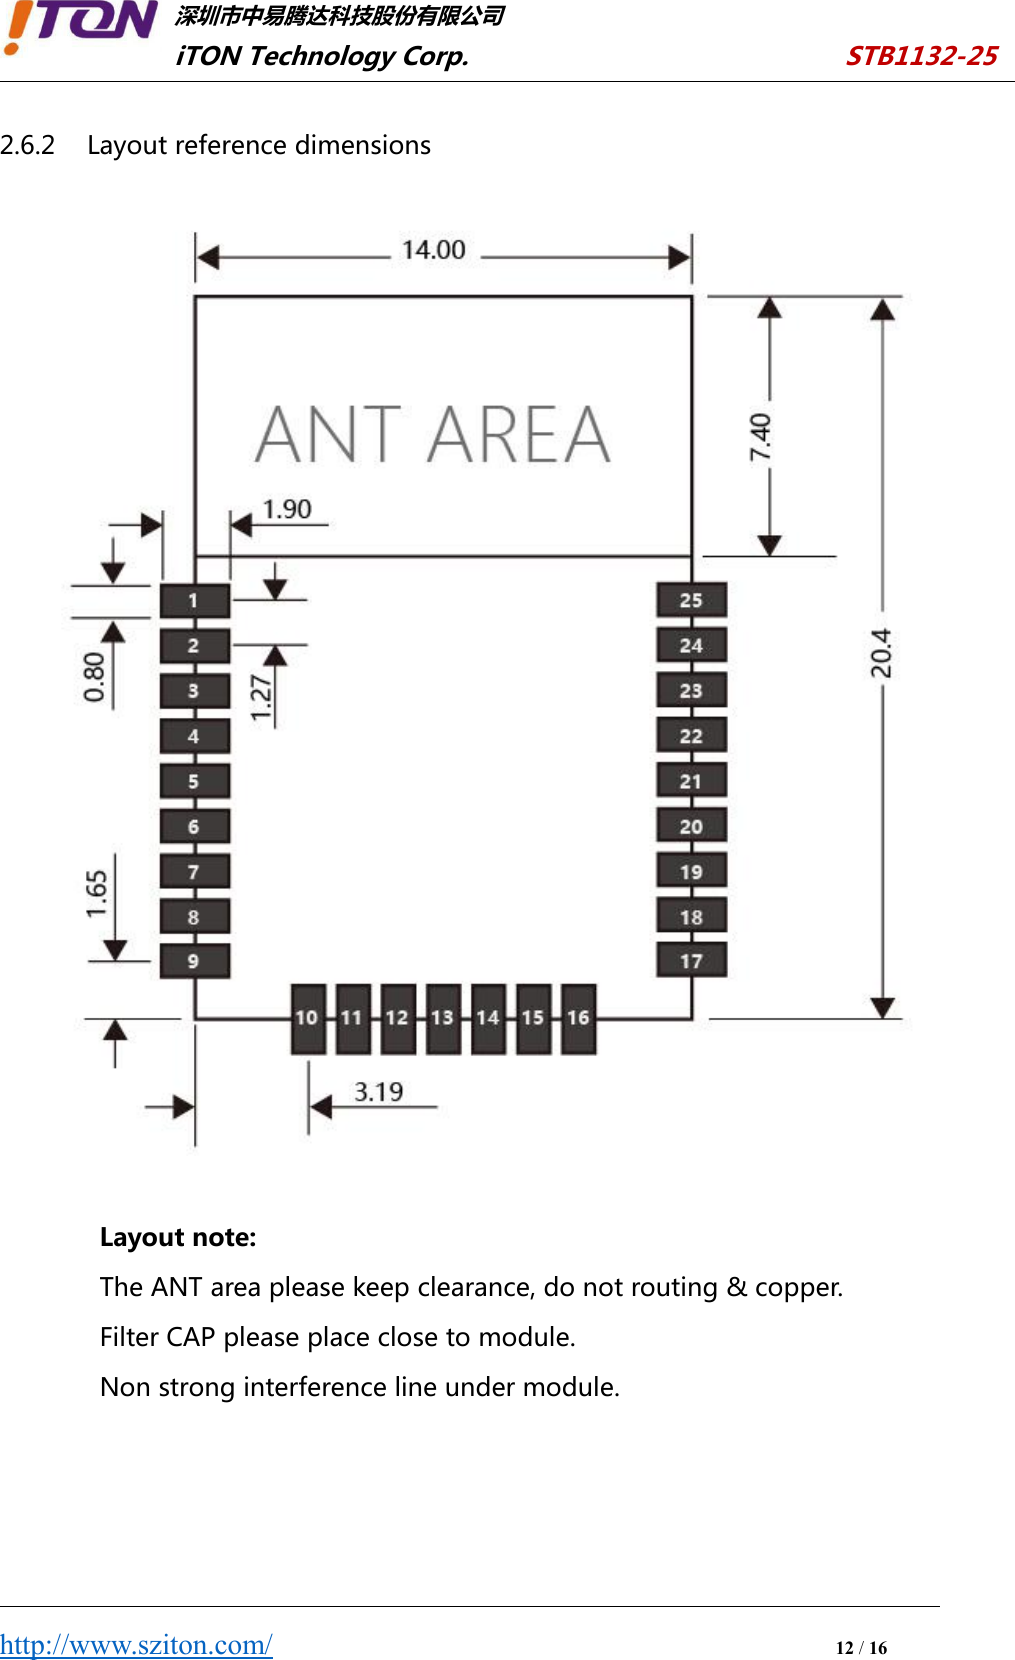 深圳市中易腾达科技股份有限公司iTON Technology Corp. STB1132-25http://www.sziton.com/12/162.6.2 Layout reference dimensionsLayout note:The ANT area please keep clearance, do not routing &amp; copper.Filter CAP please place close to module.Non strong interference line under module.